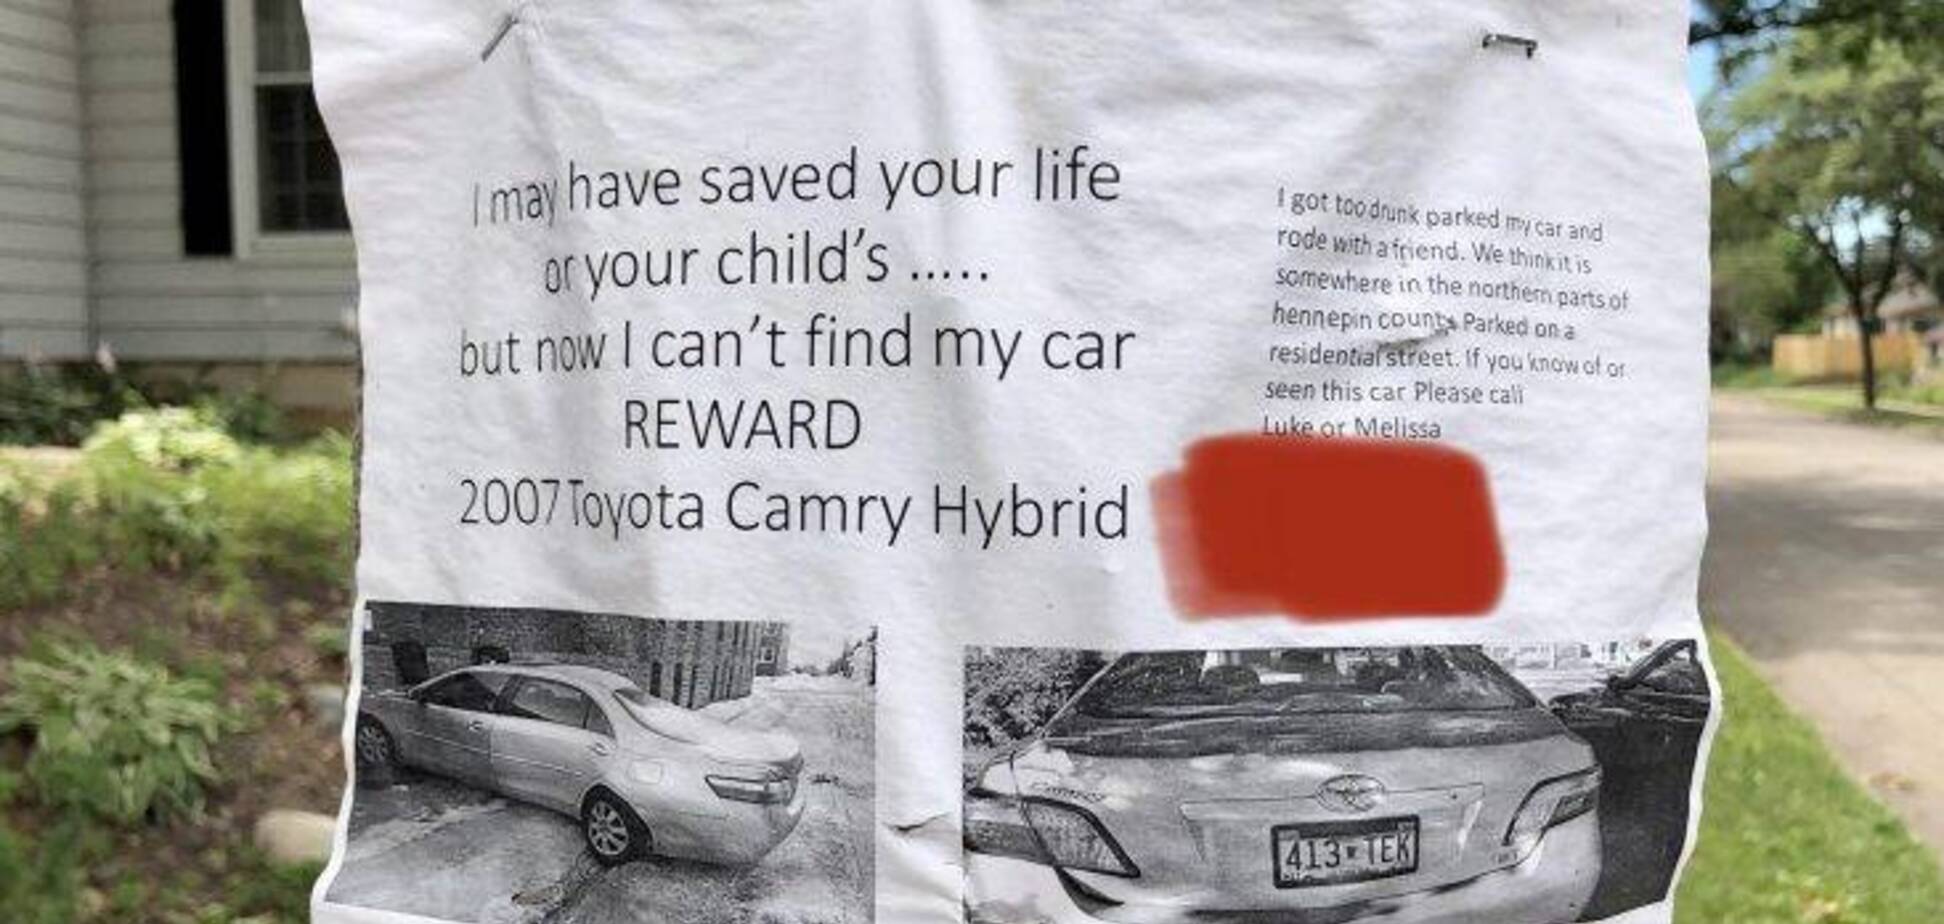 Водій напідпитку загубив Toyota Camry і тепер шукає її через оголошення